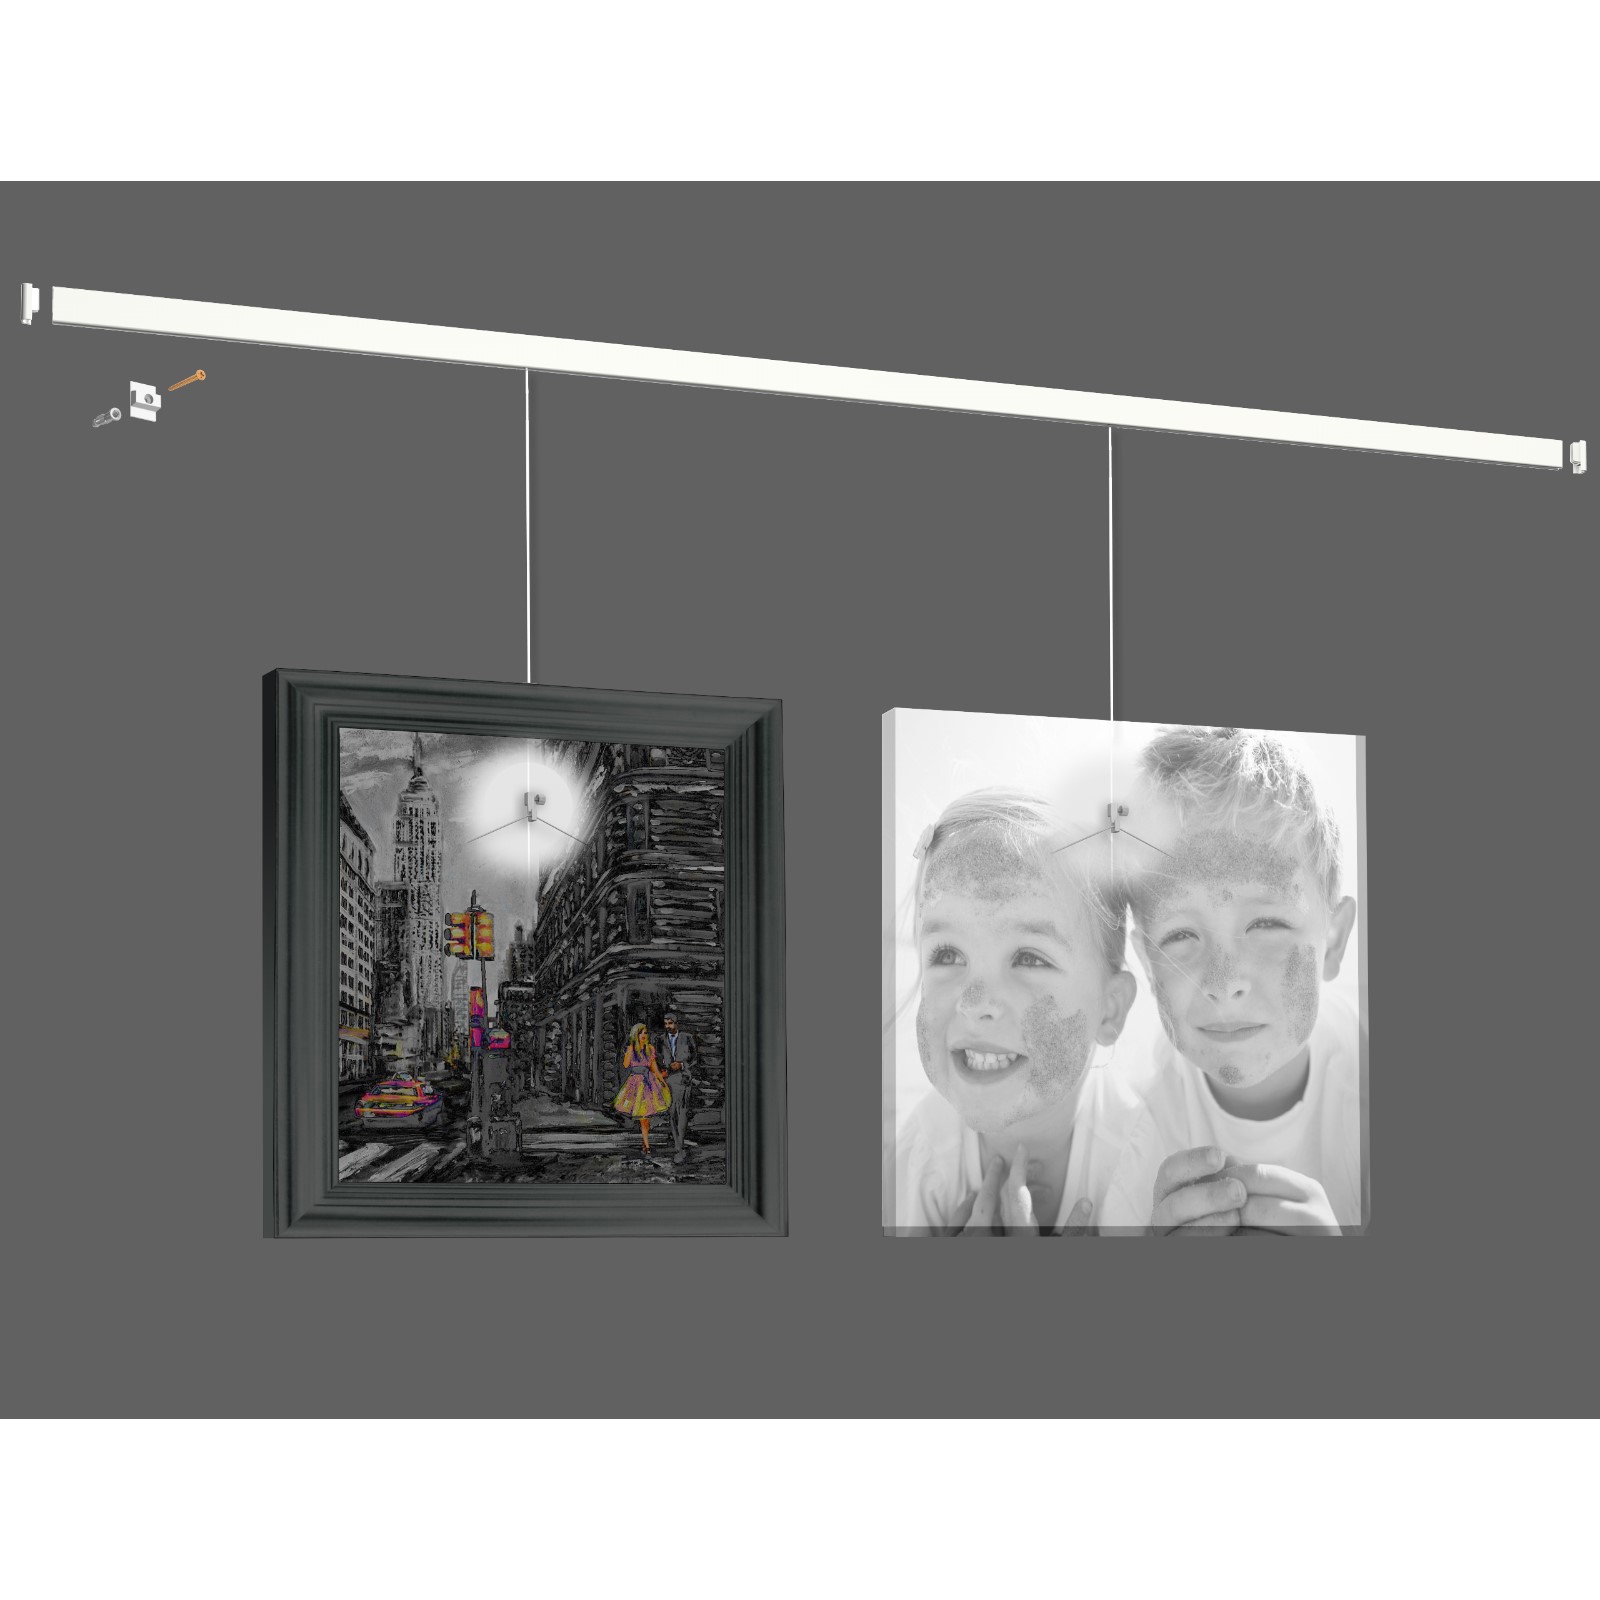 Система для подвеса картин: настенный рельс Клик 400 см нагрузка 30 кг/м  (возможна покраска) белый 9.5628 по цене 4979 ₽/шт. купить в Москве в  интернет-магазине Леруа Мерлен